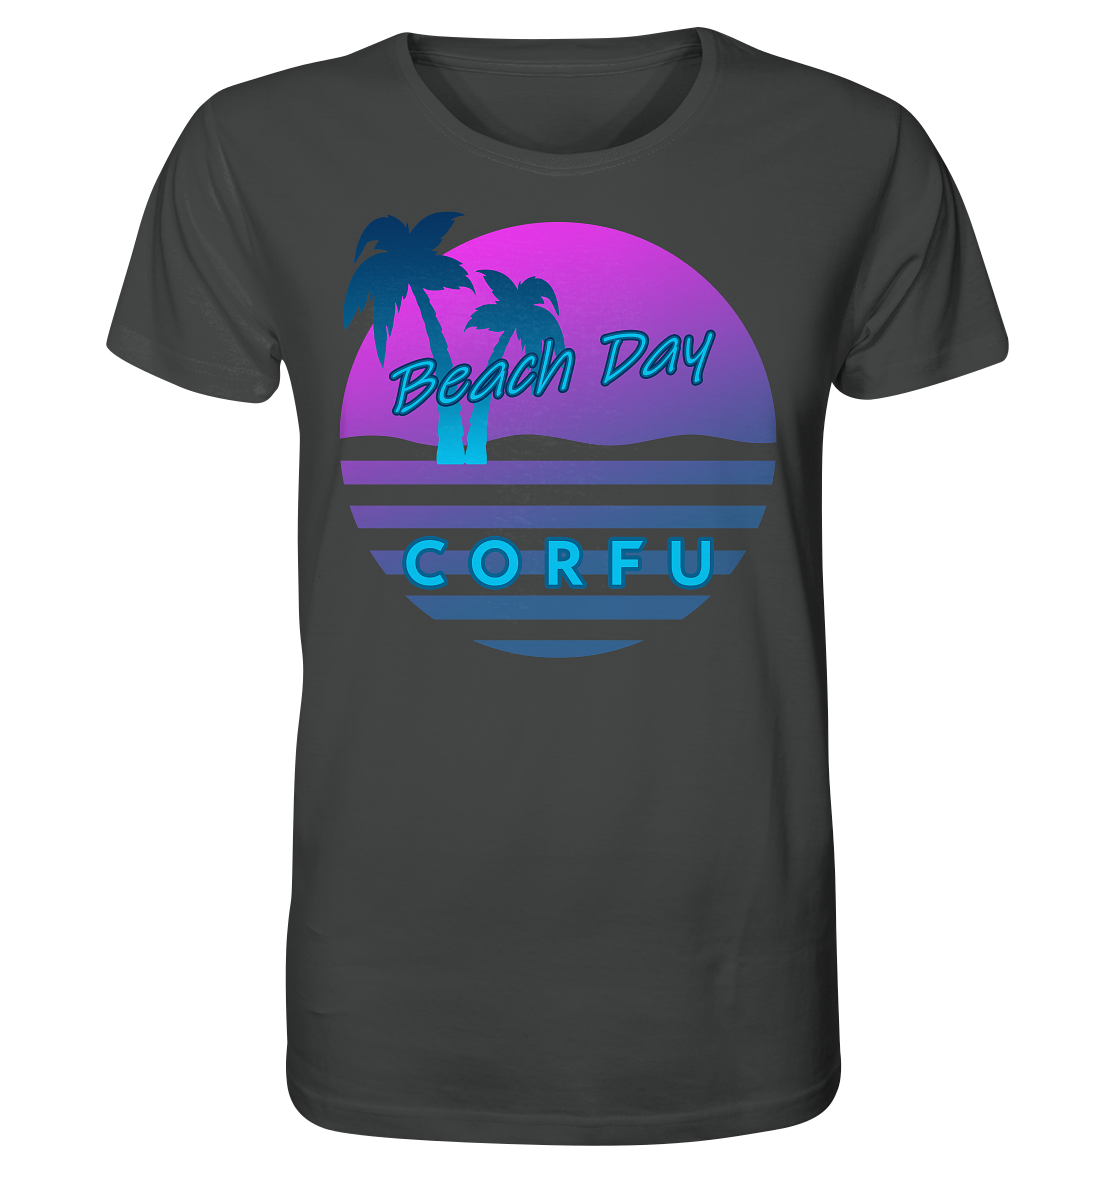 Beach Day Corfu - Organic Shirt